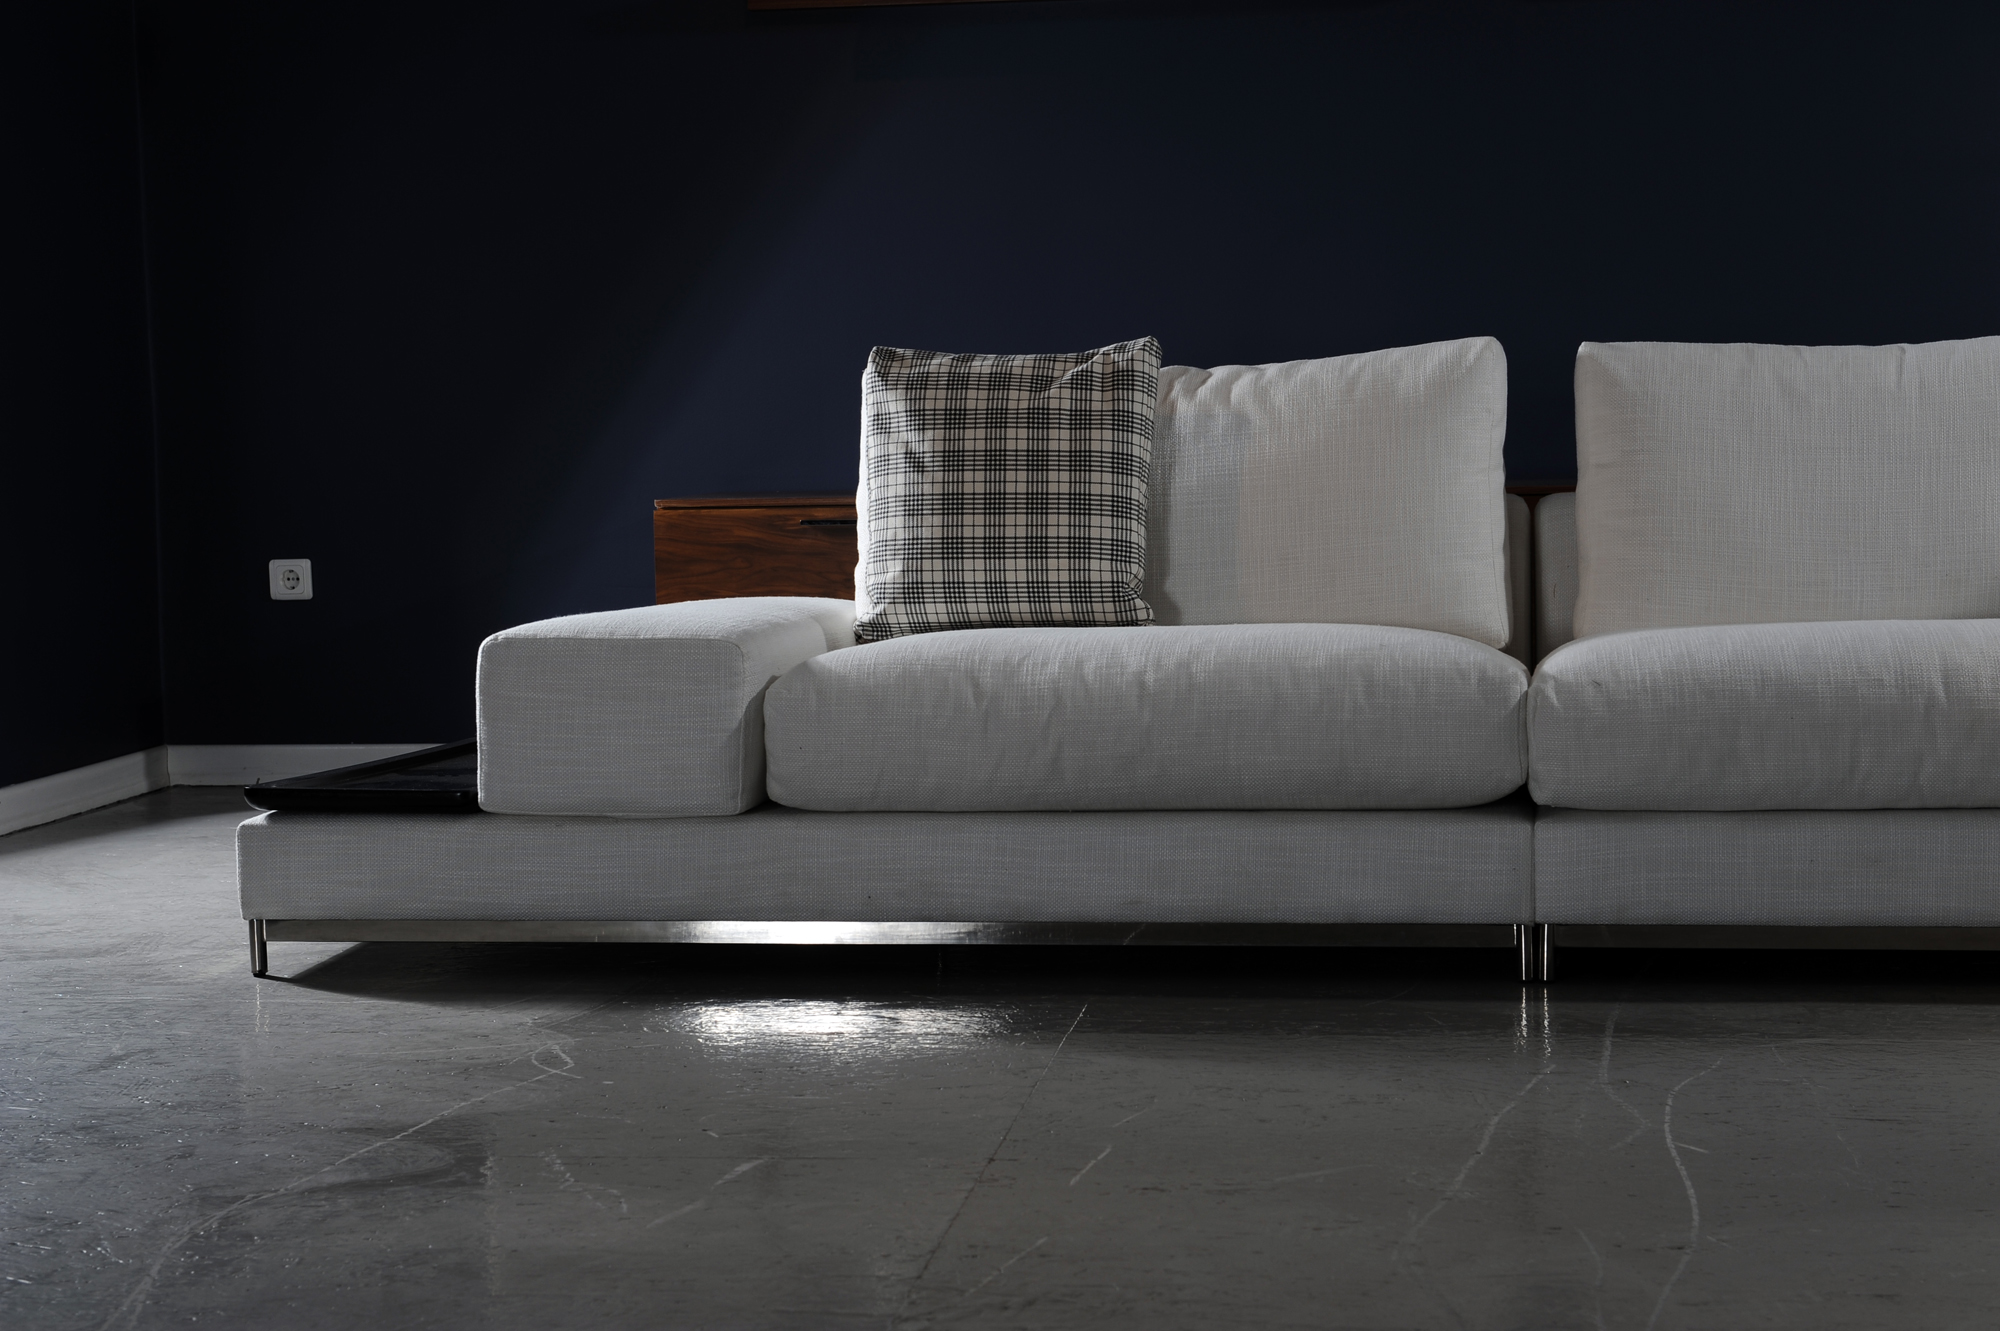 Fairway Modern Sofa Set Cavollone Italian Luxury